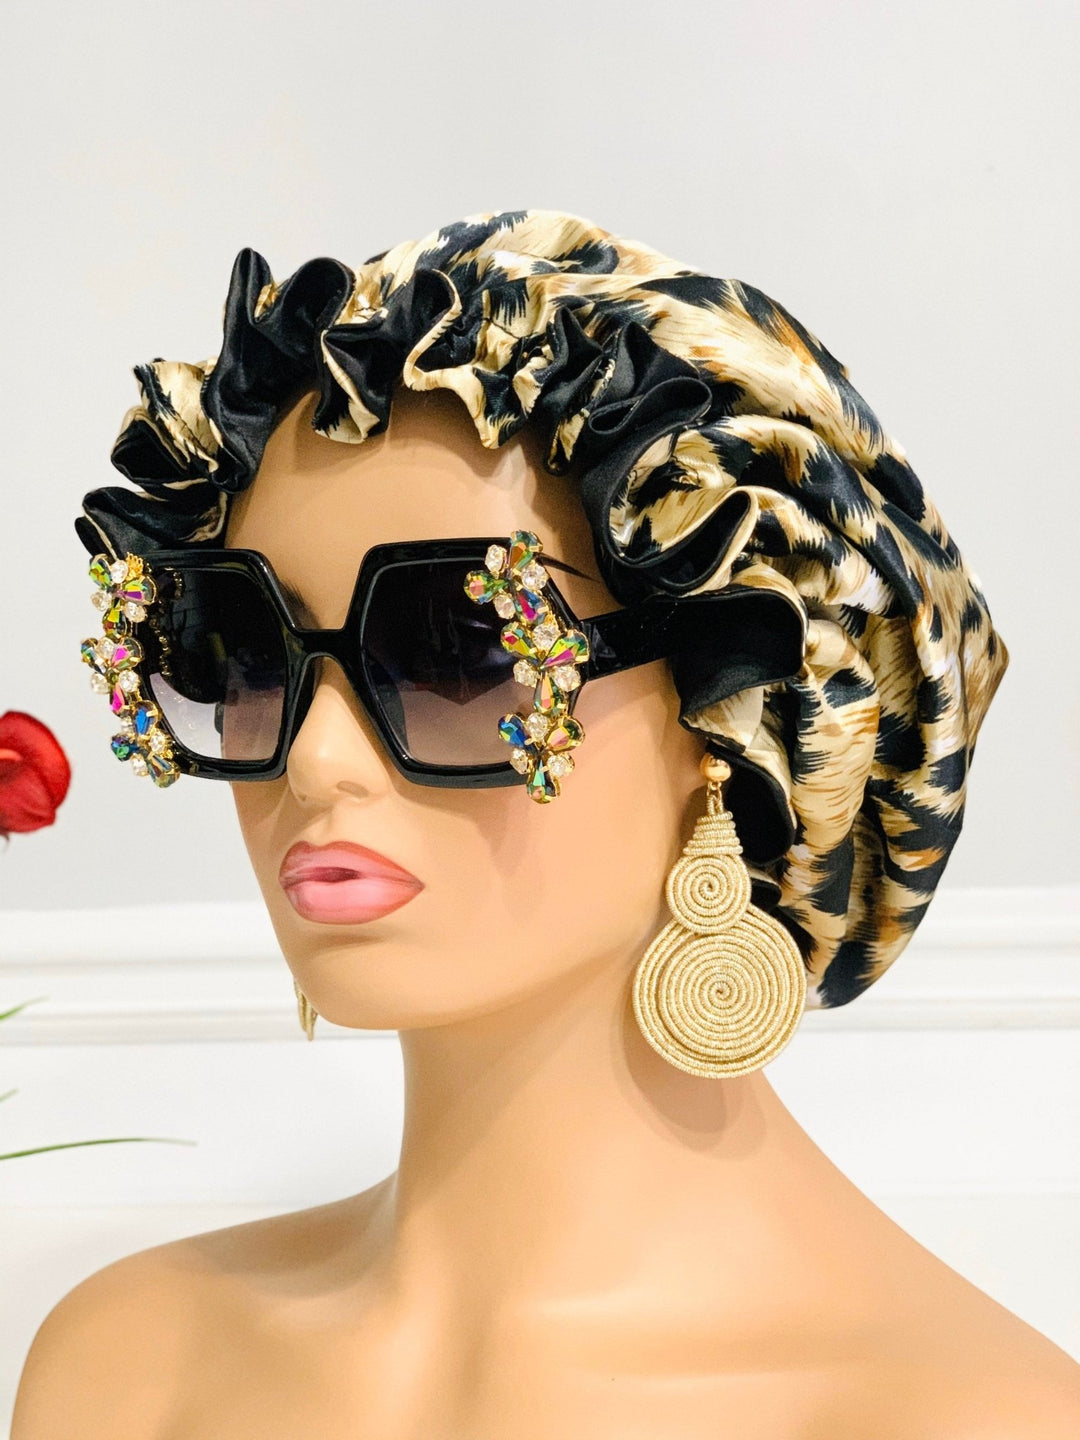 Luxury Rhinestone Sunglasses | Sunglasses for women | Rhinestone Sunglass - Mudvii